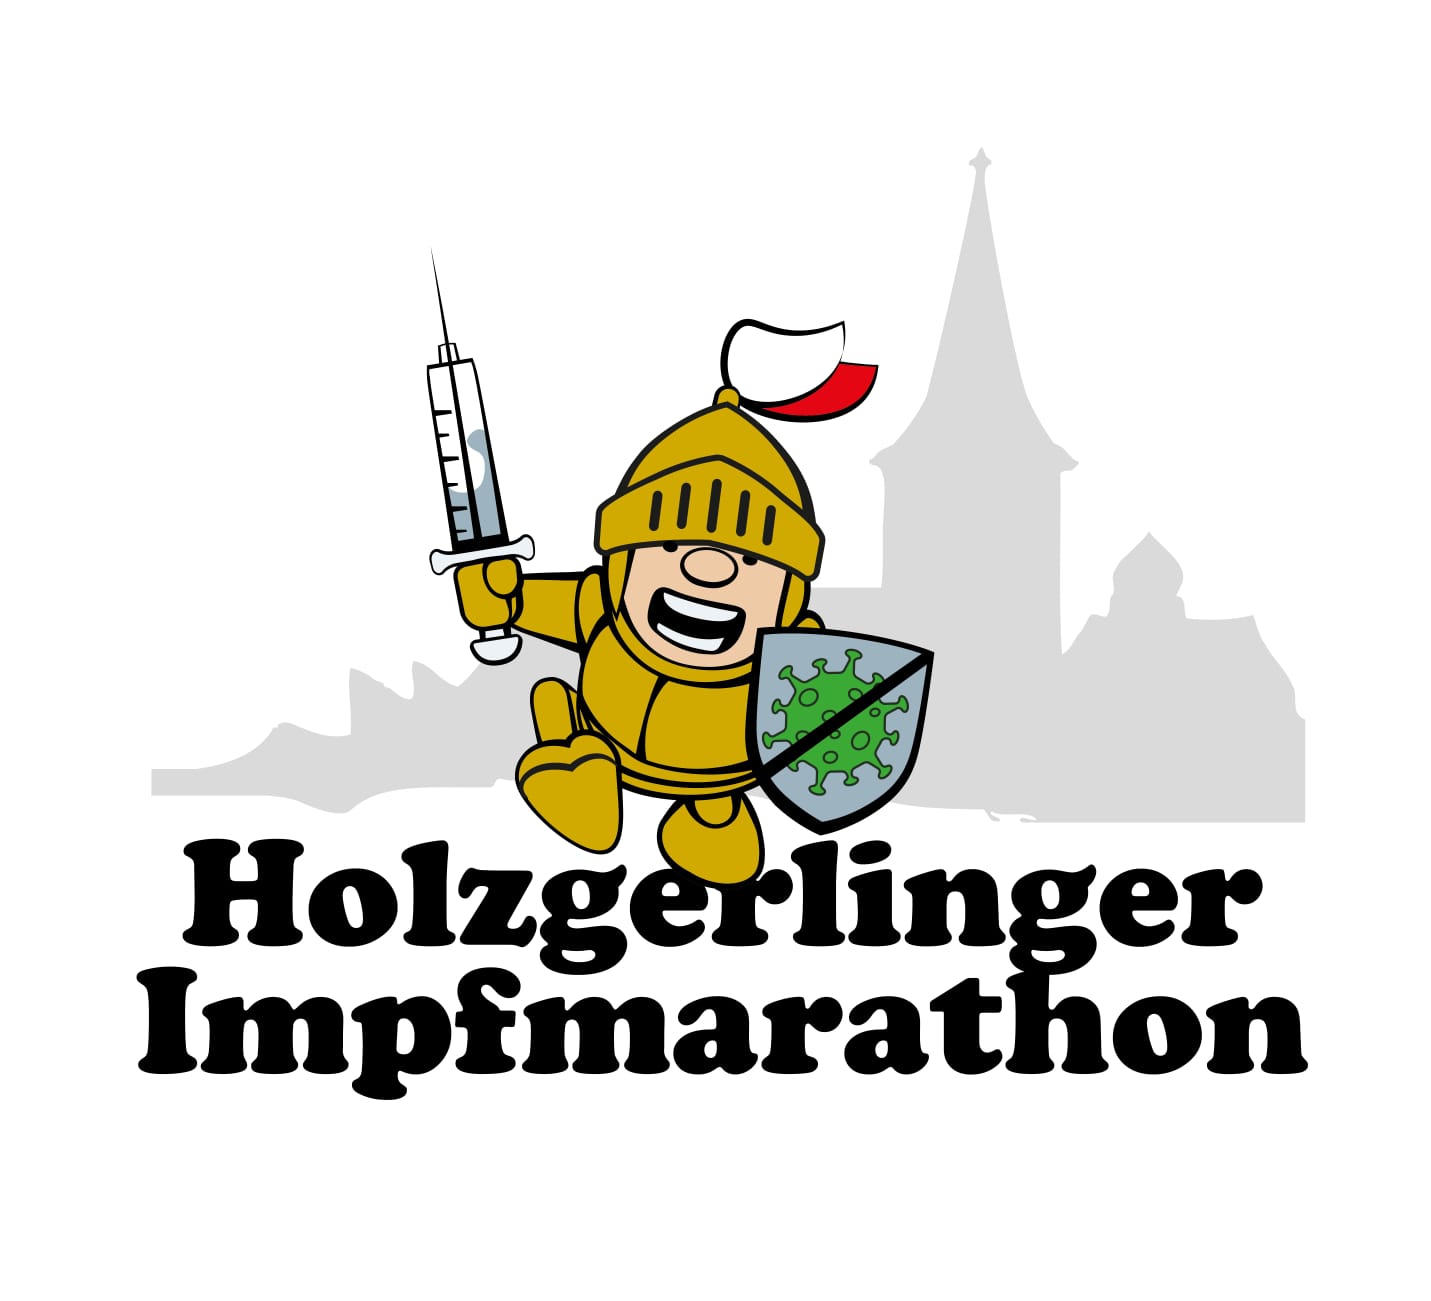  Holzgerlinger Impfmarathon 